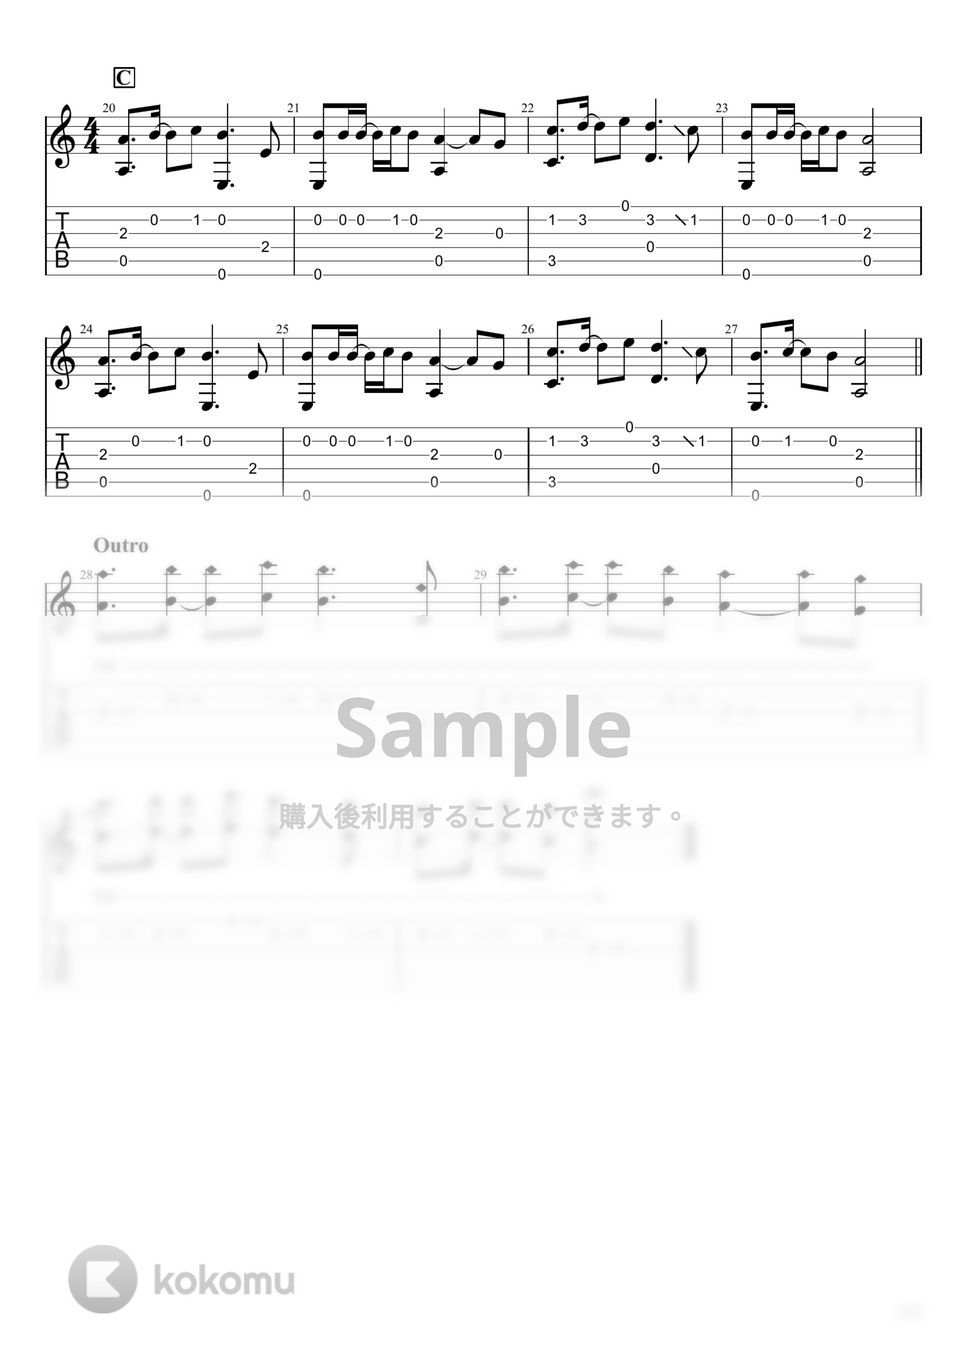 中島みゆき - 地上の星 (ソロギター) by u3danchou